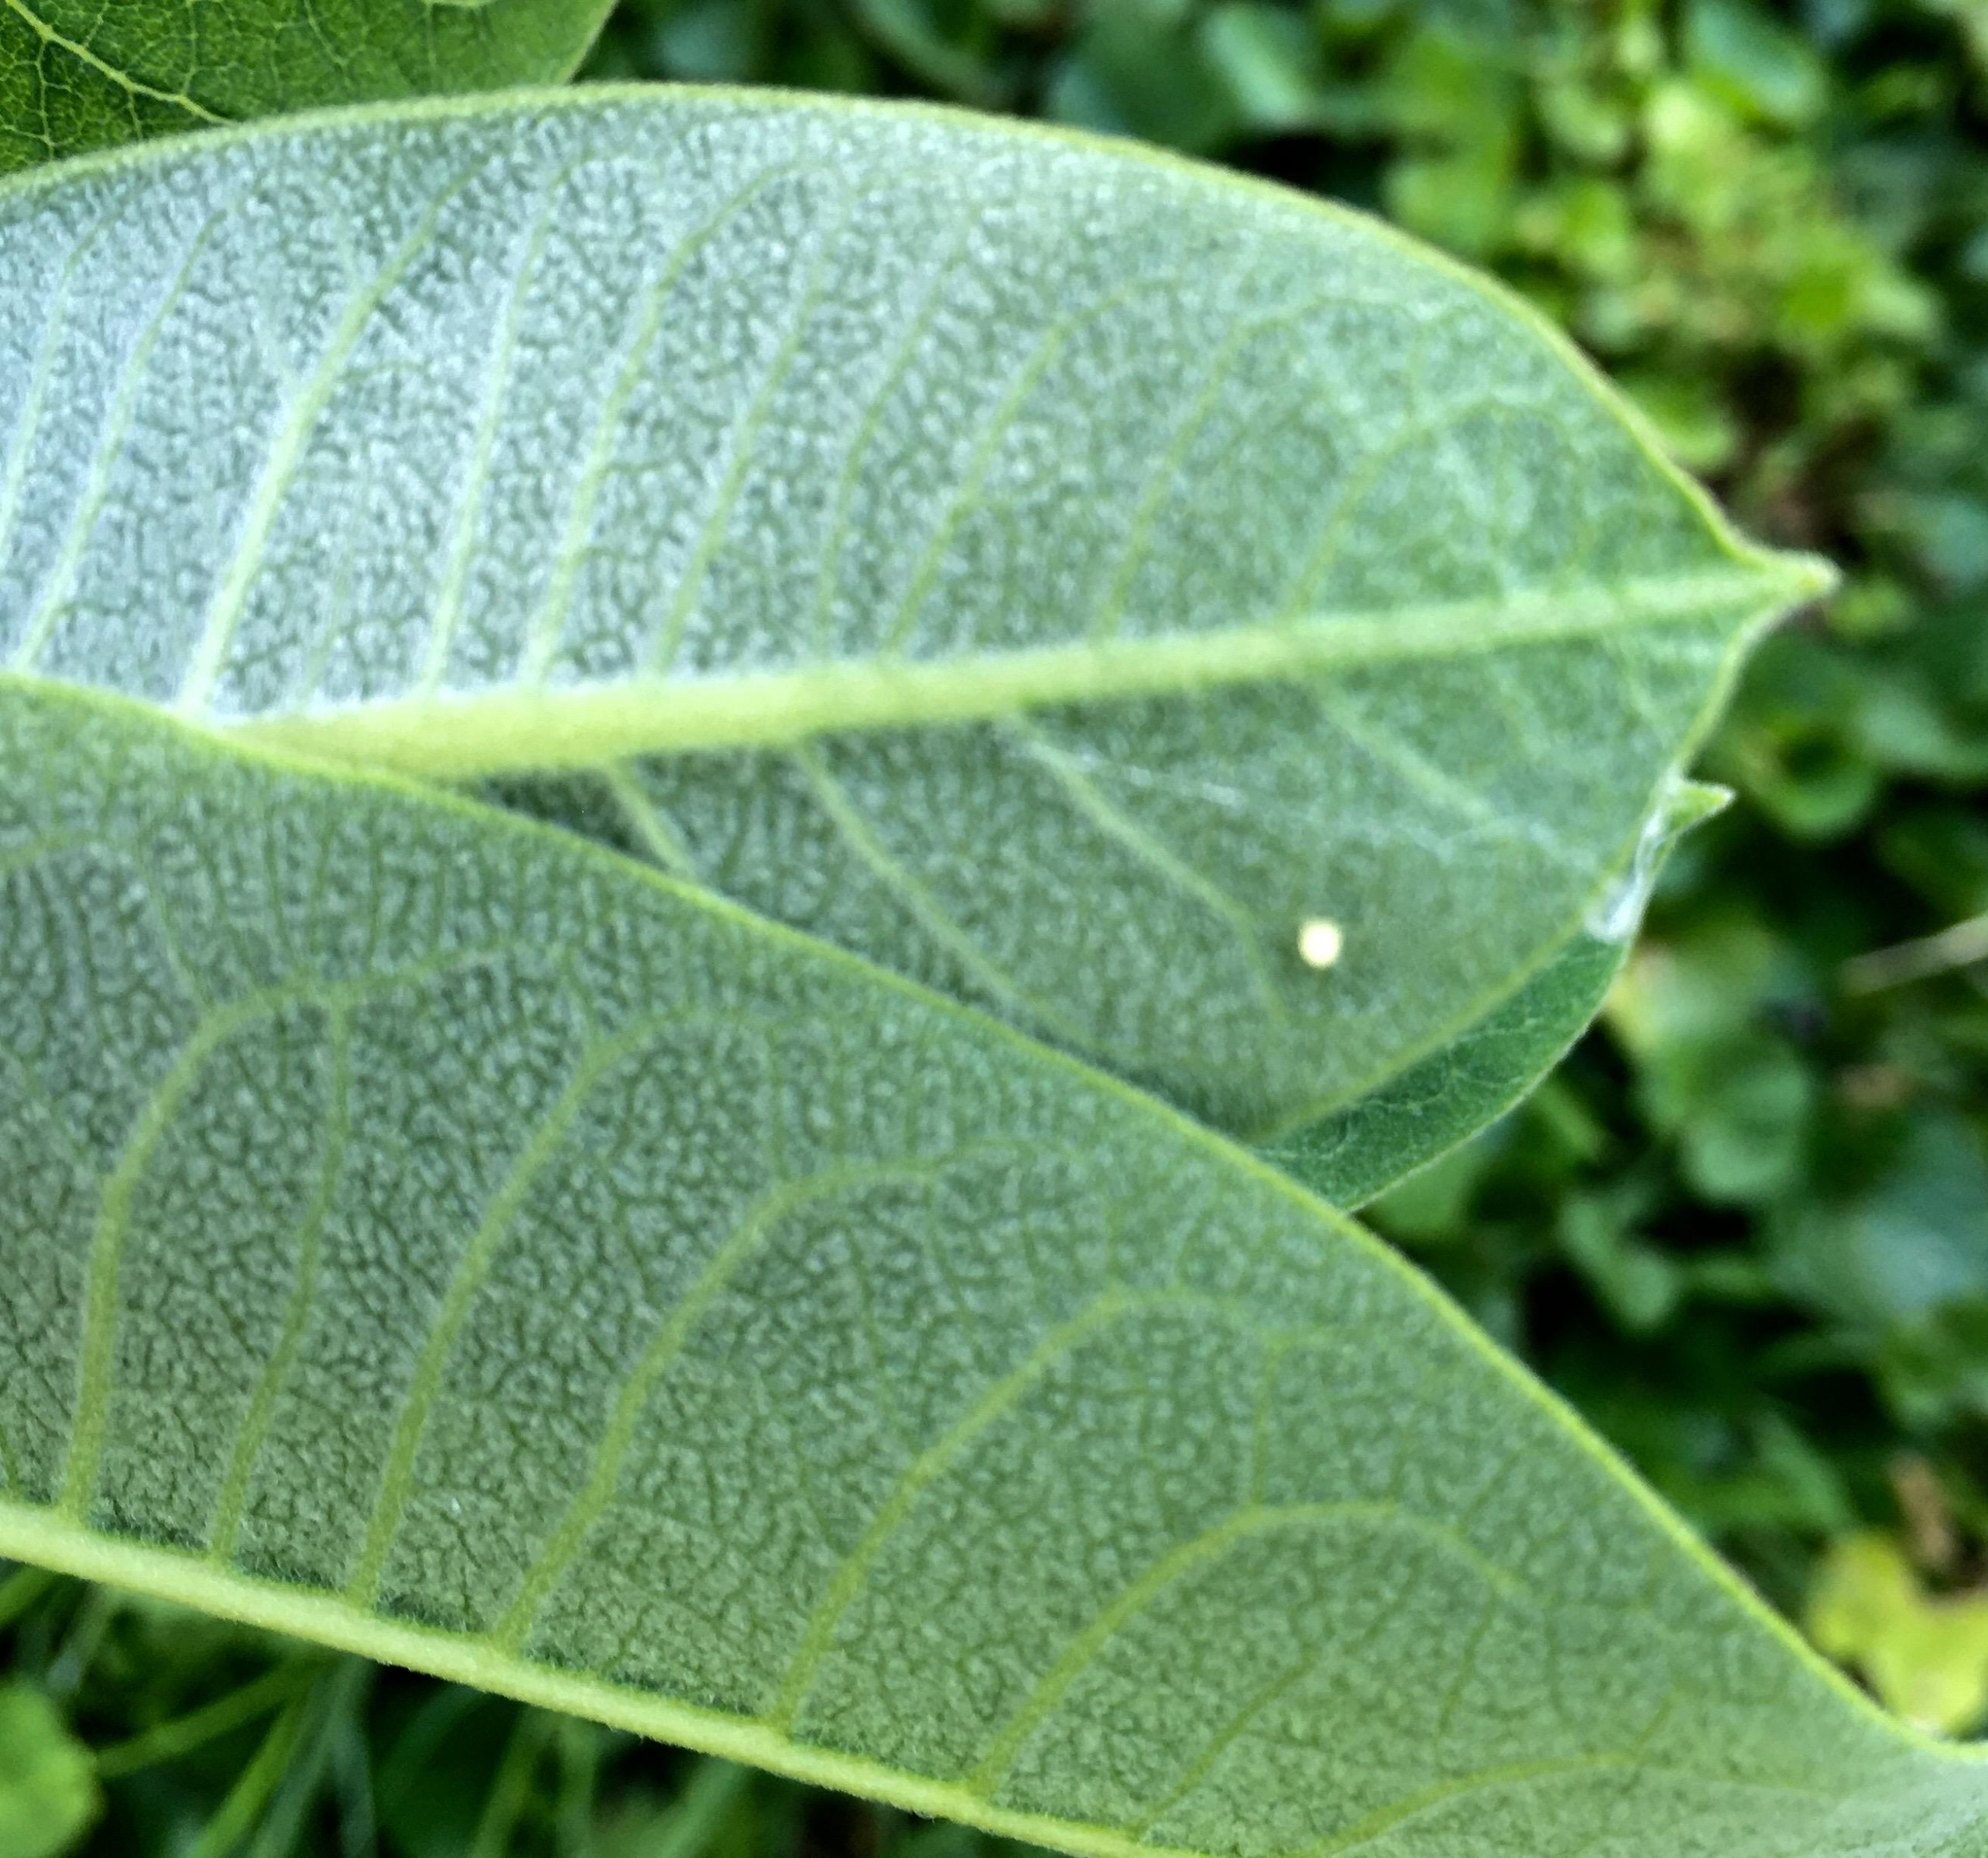 Monarch eggs on milkweed